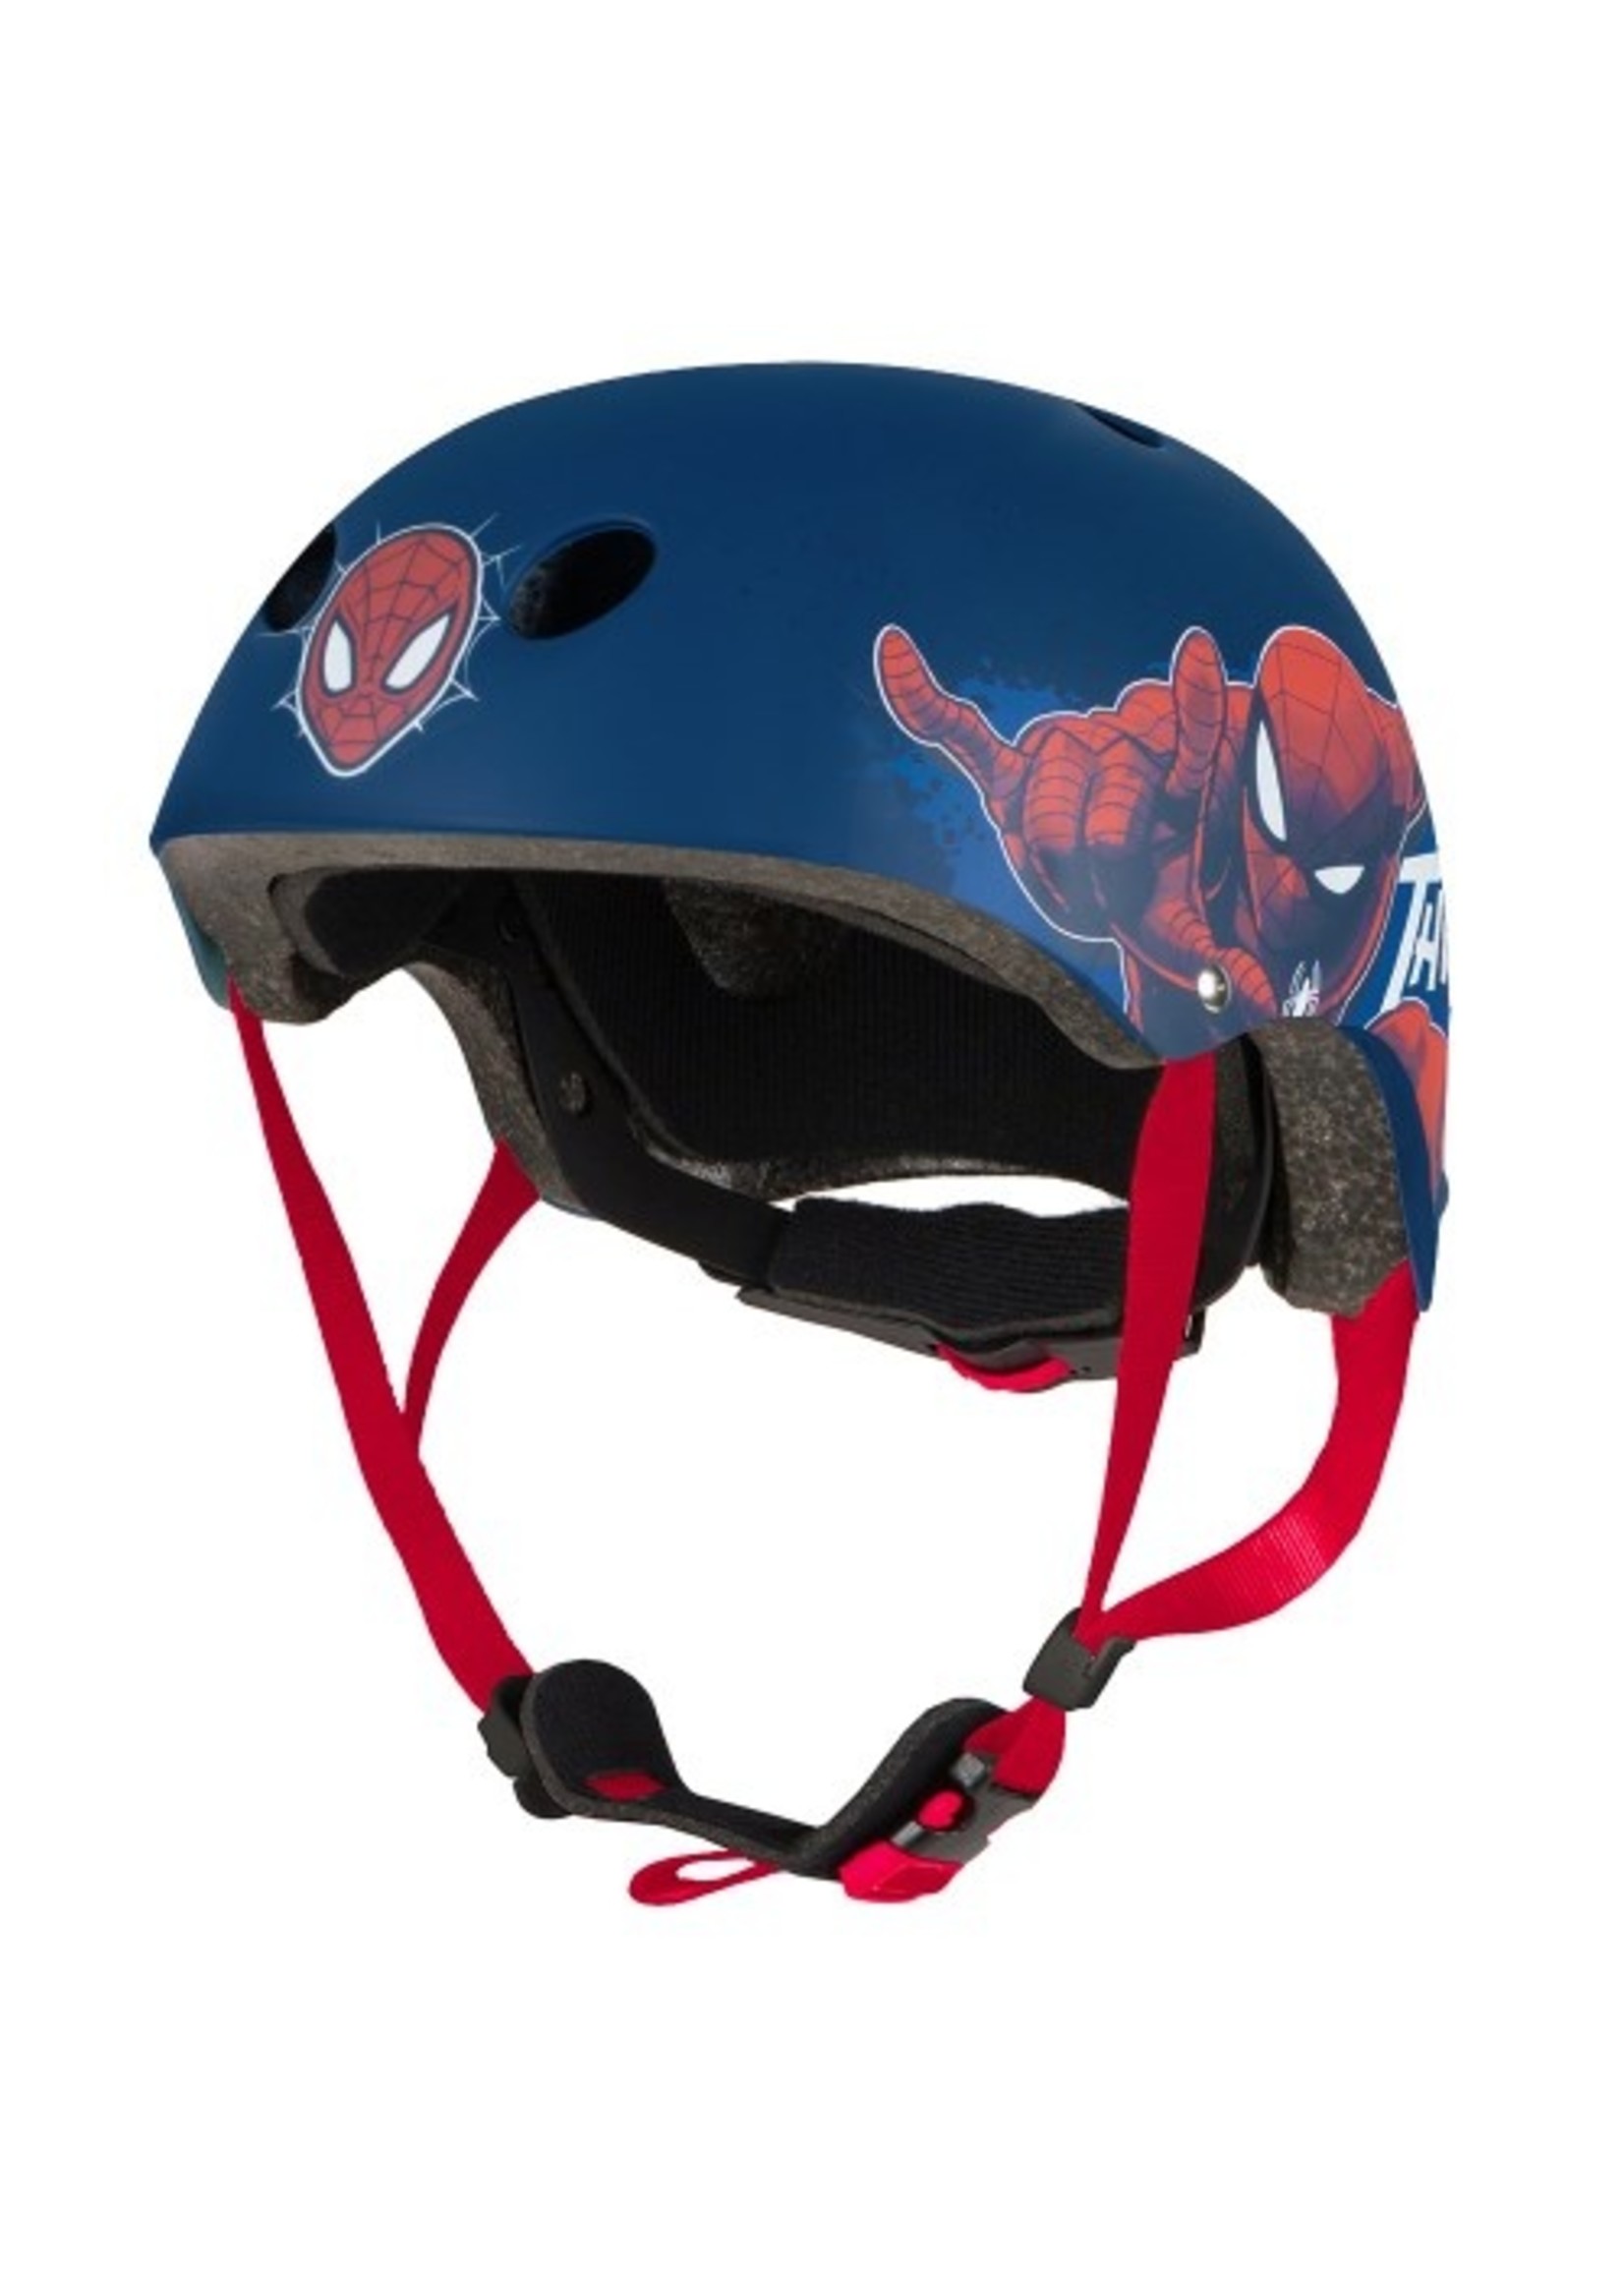 Marvel Spiderman skate helmet from Marvel navy blue